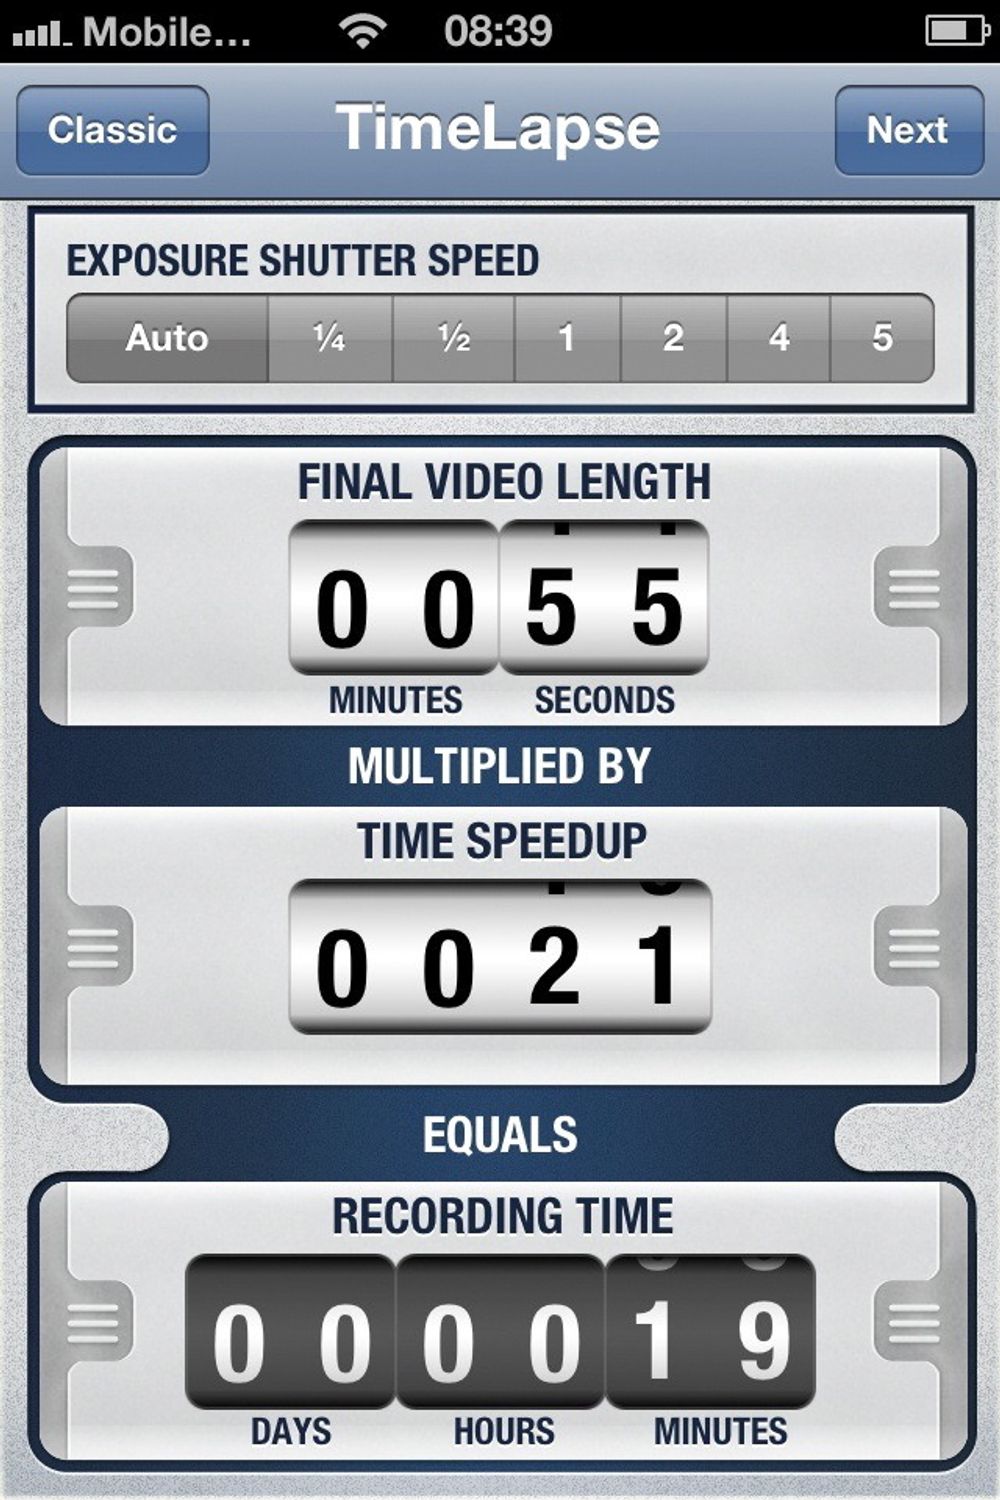 ENKELT: Med en opptakstid på 19 minutter og time speedup på 21, får du en film på 55 sekunder. 